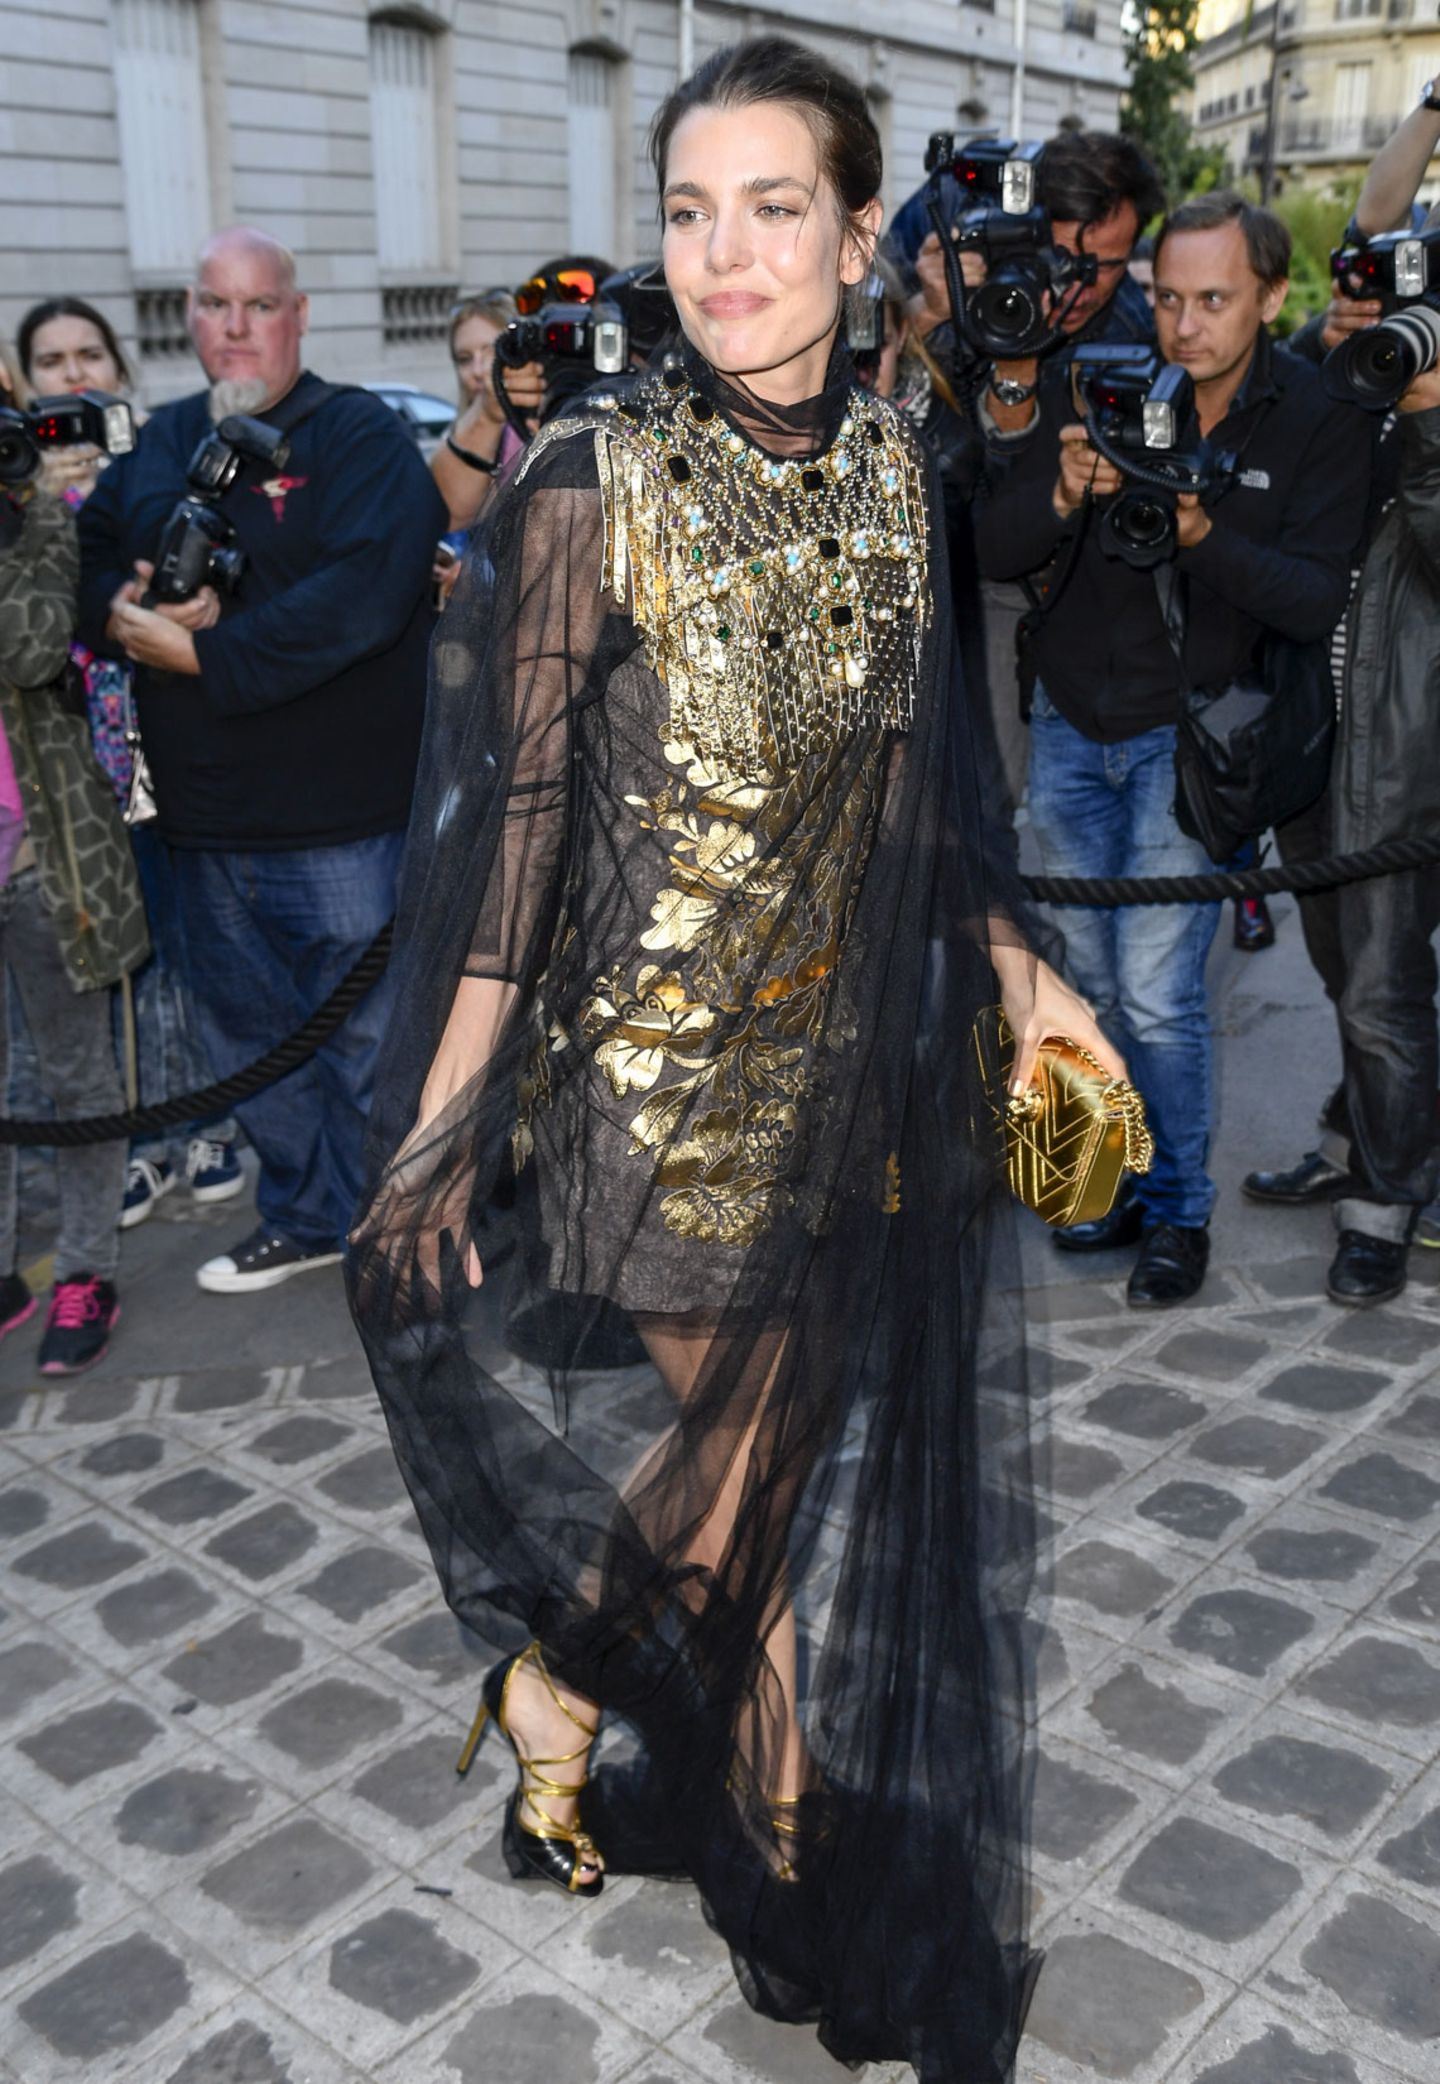 Charlotte Casiraghi erscheint in einem raffinierten Kleid mit Tüllstola zur Vogue Party der Pariser Fashion Week.